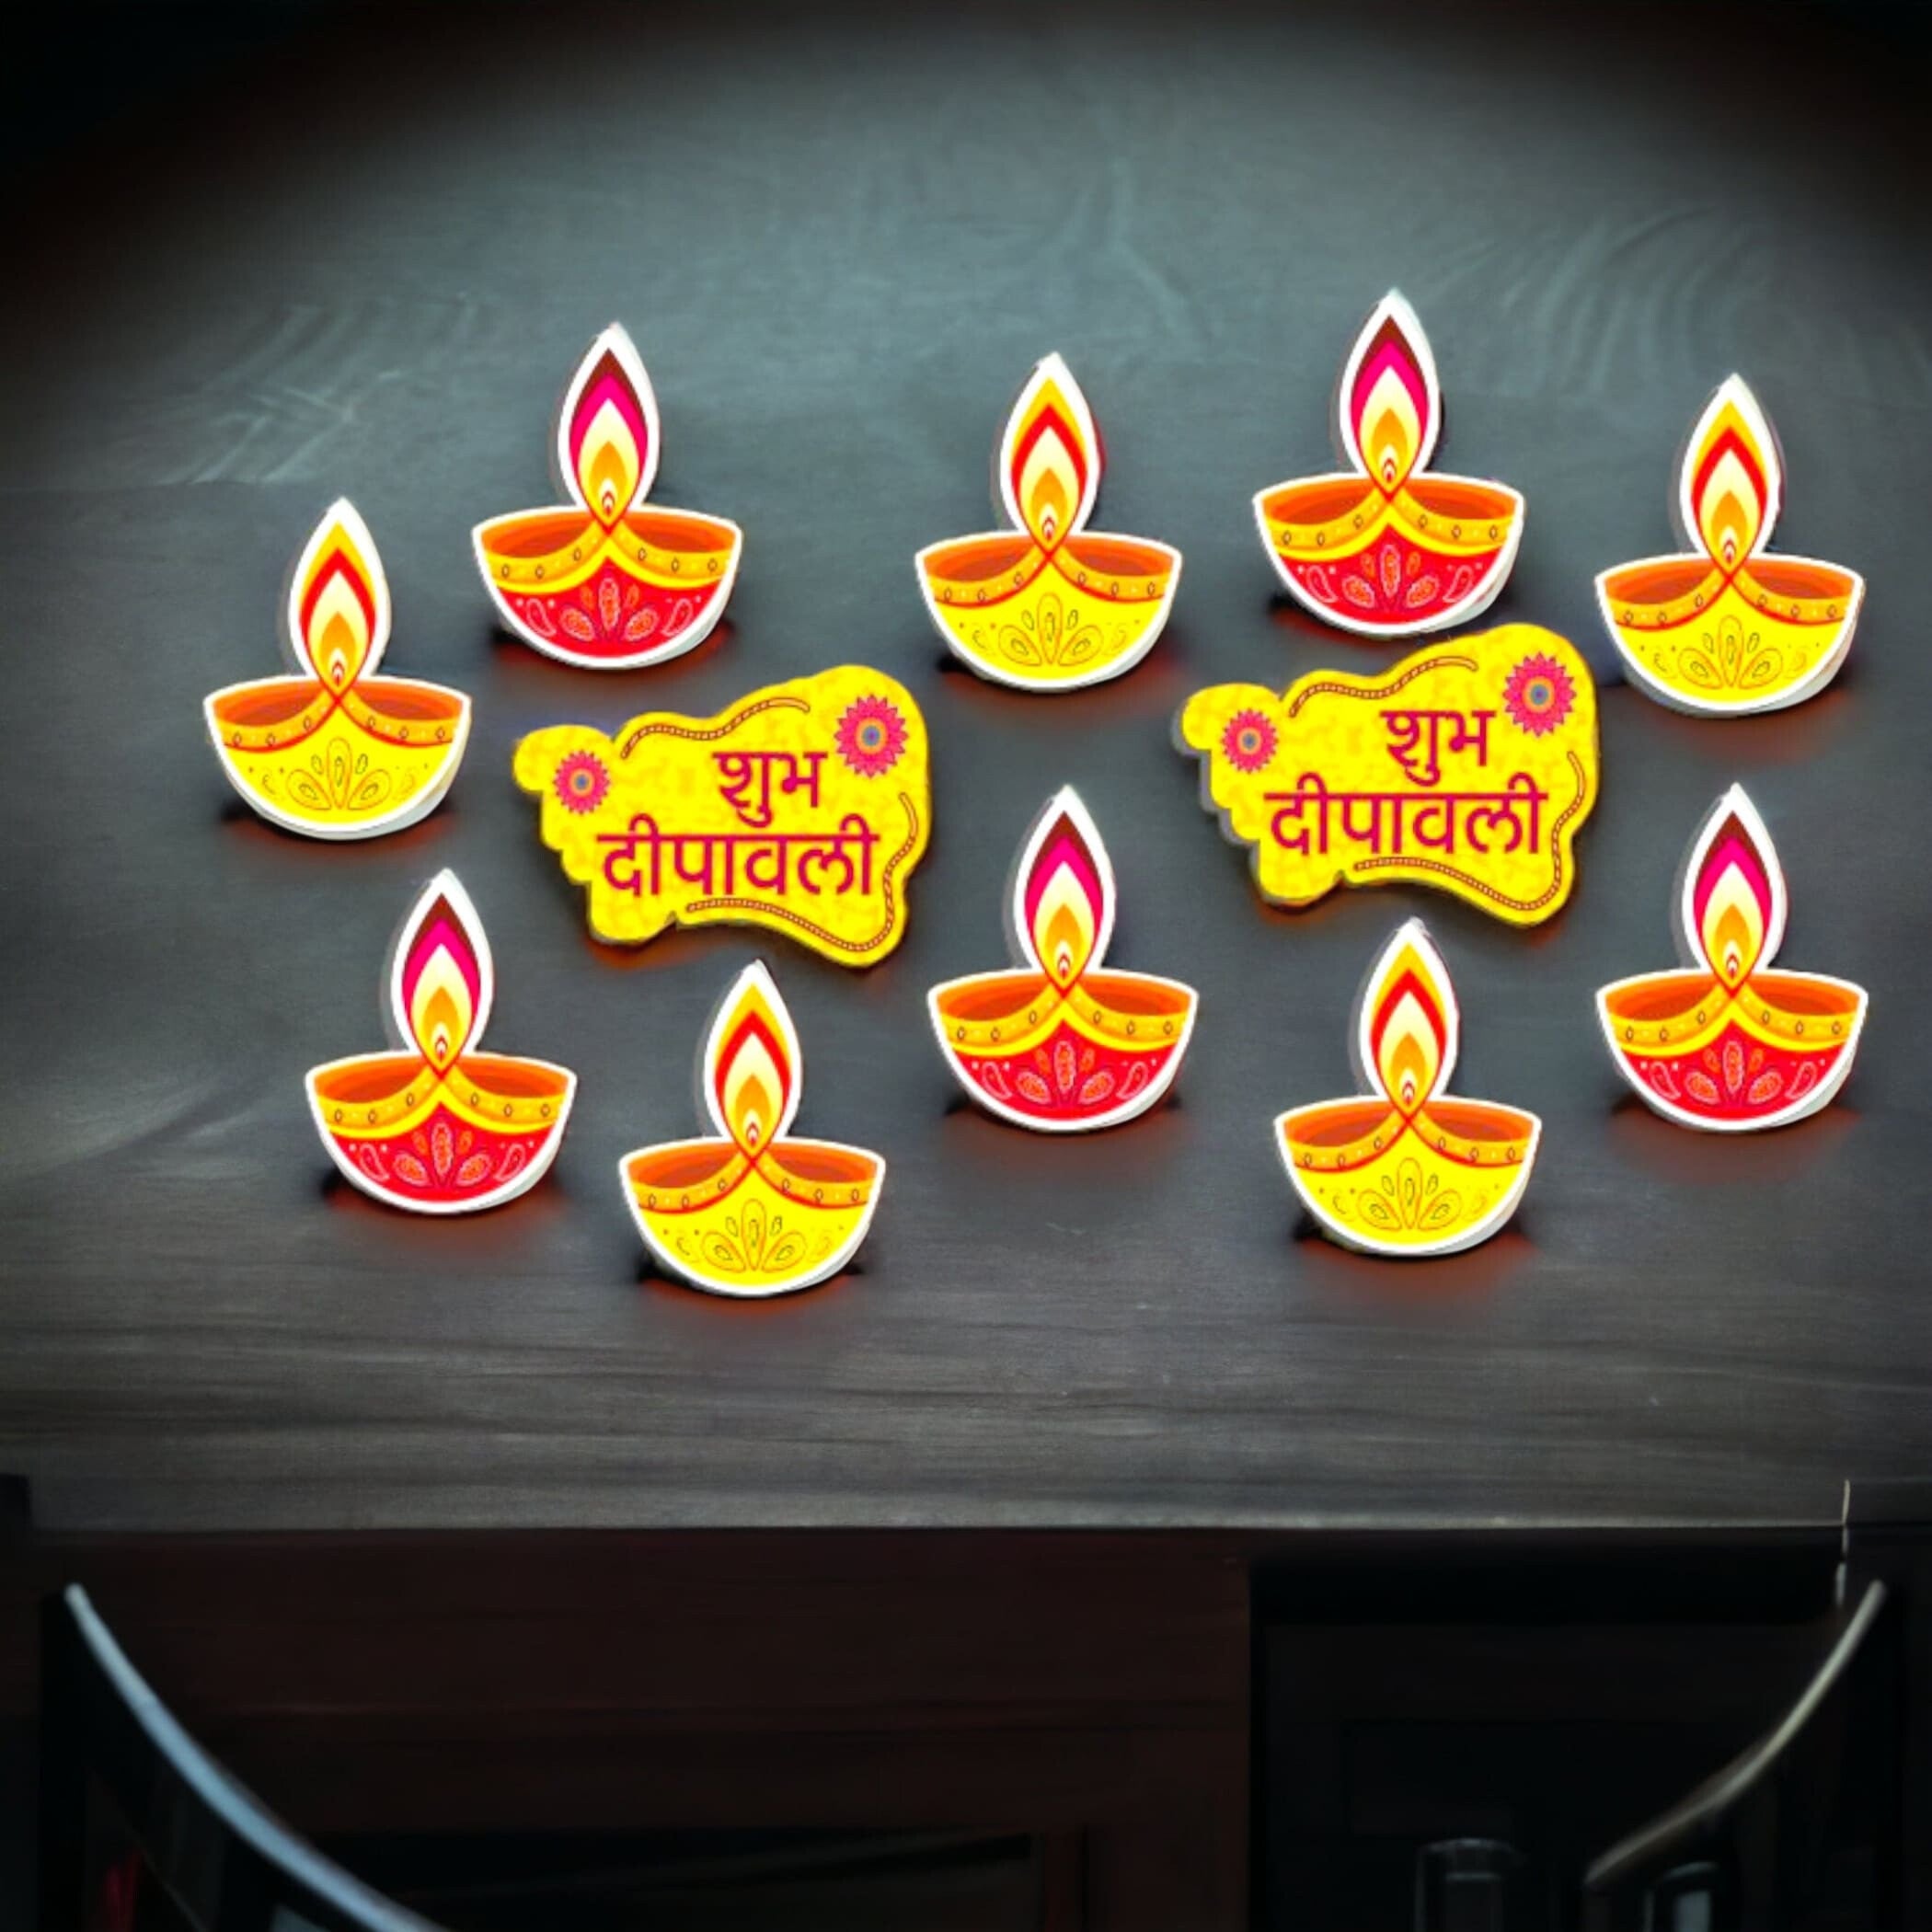 16pcs diy diwali wall decor paper cutouts decoration home